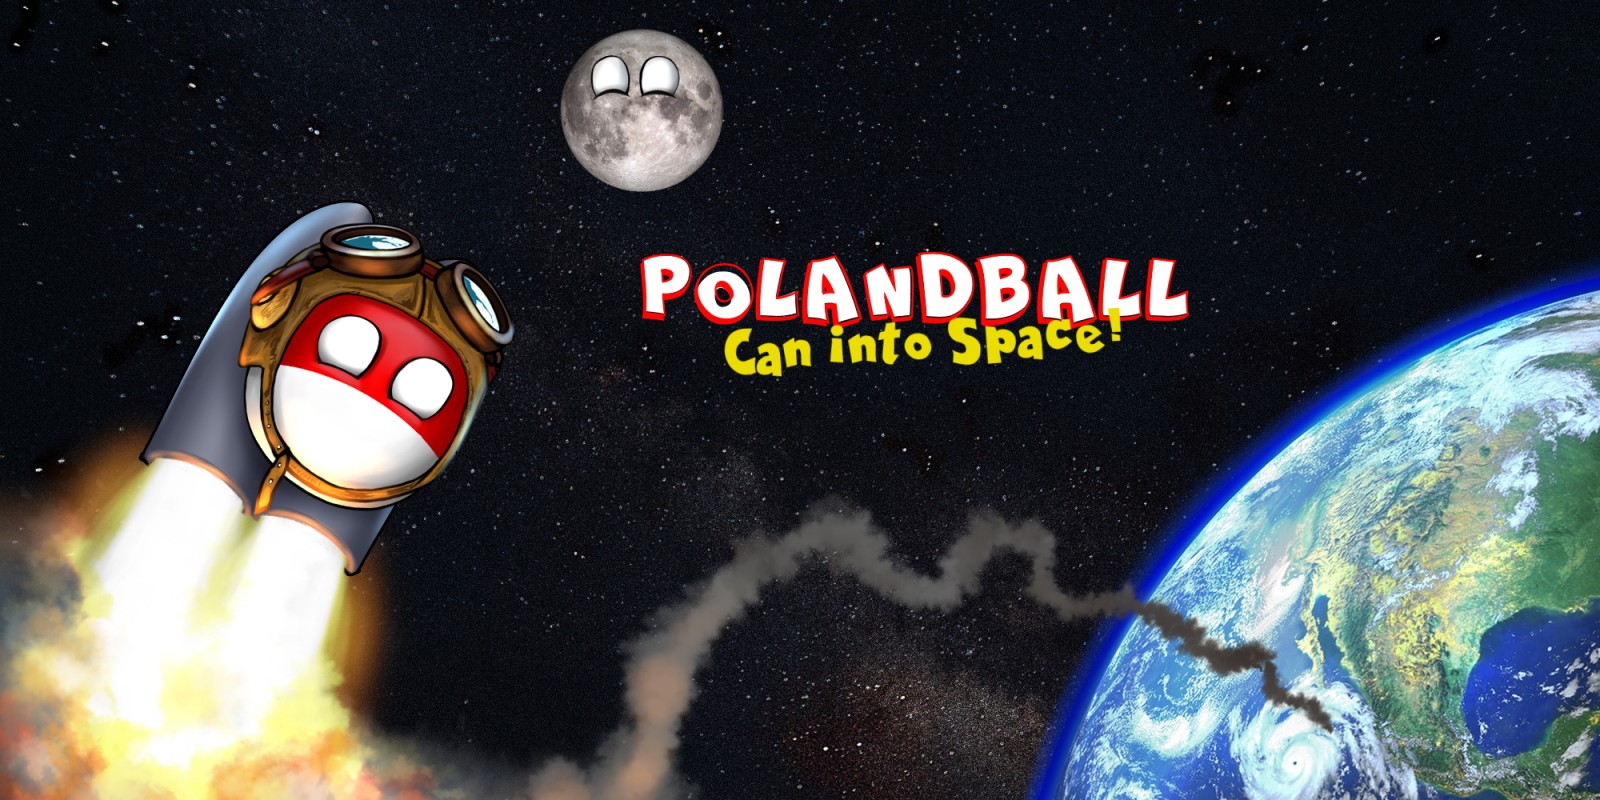 countryballs the polandball game download